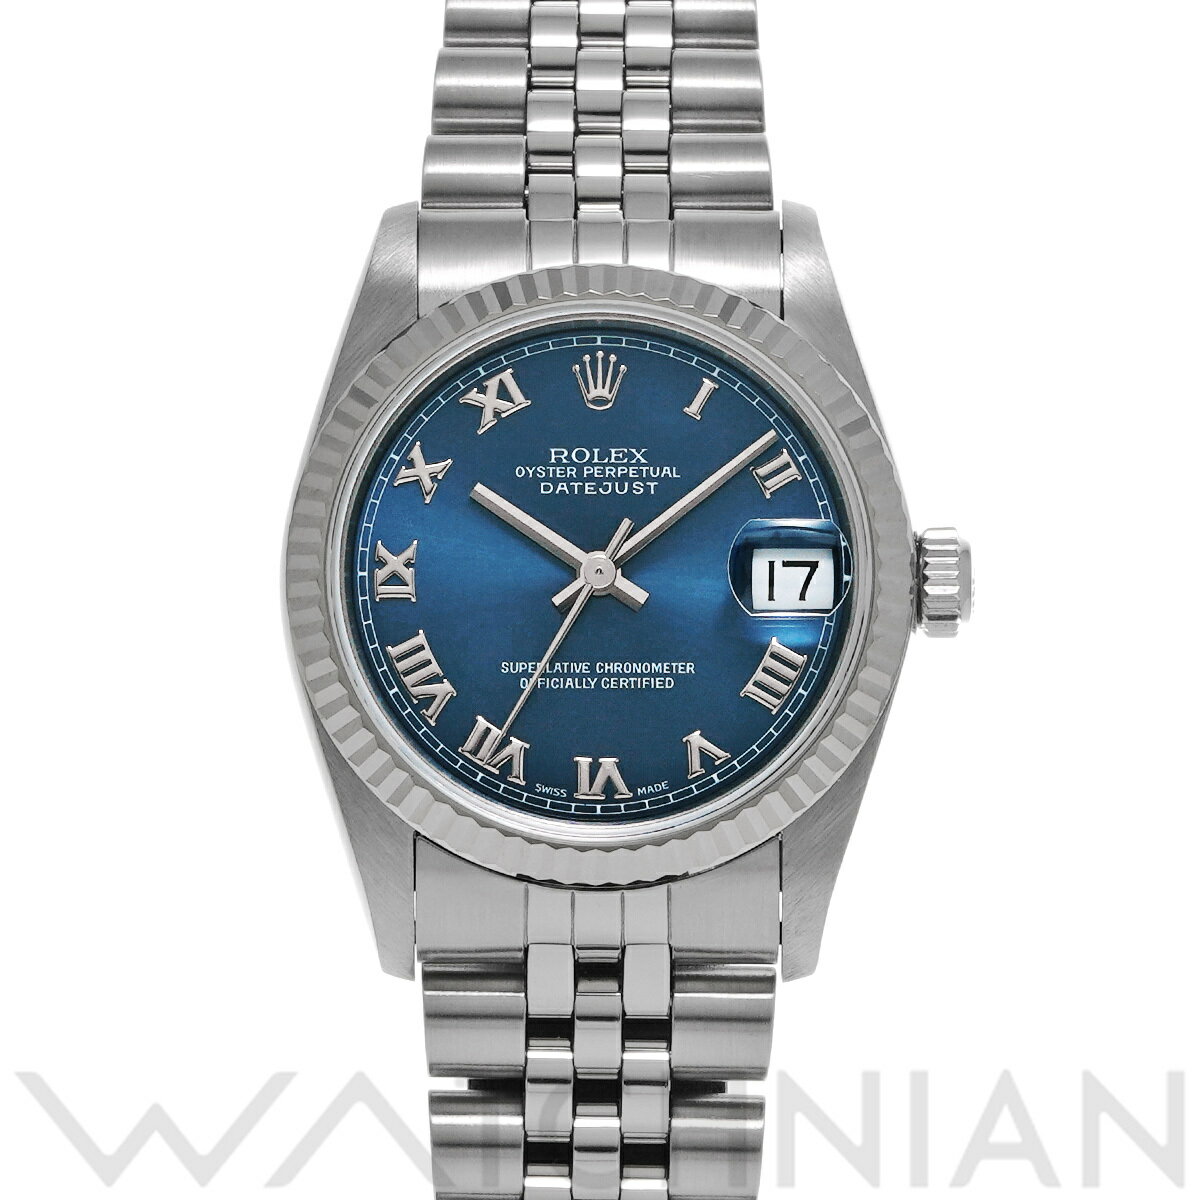 【ローン60回払い無金利】【中古】 ロレックス ROLEX デイトジャスト 68274 U番(1997年頃製造) ブルー ユニセックス 腕時計 ロレックス 時計 高級腕時計 ブランド